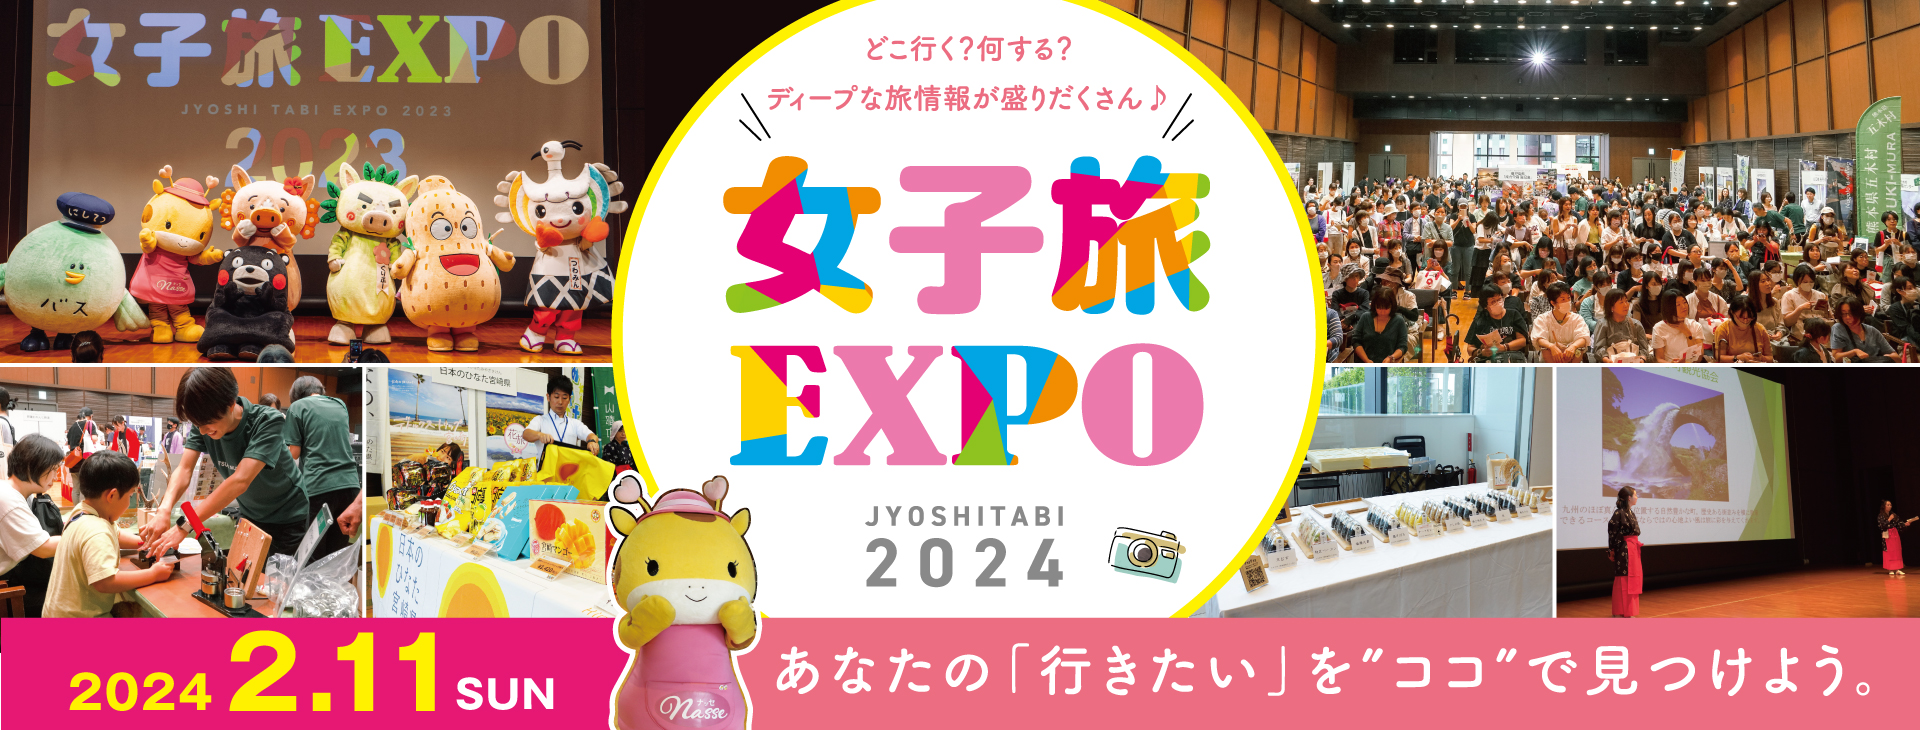 女子旅EXPO2024年第1弾